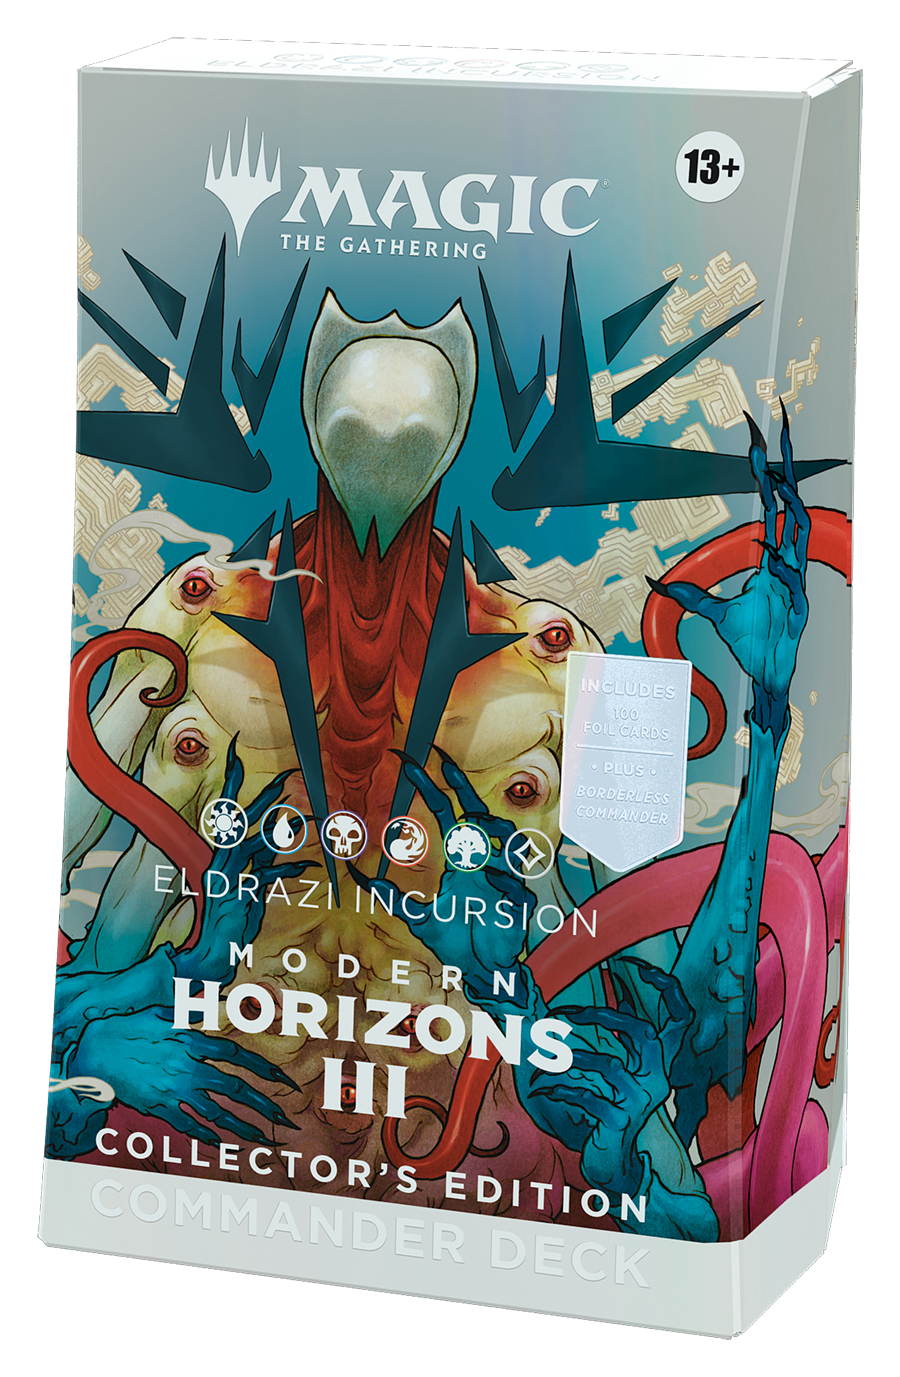 Modern Horizons 3 - Commander Decks – Collector's Edition - Eldrazi Incursion